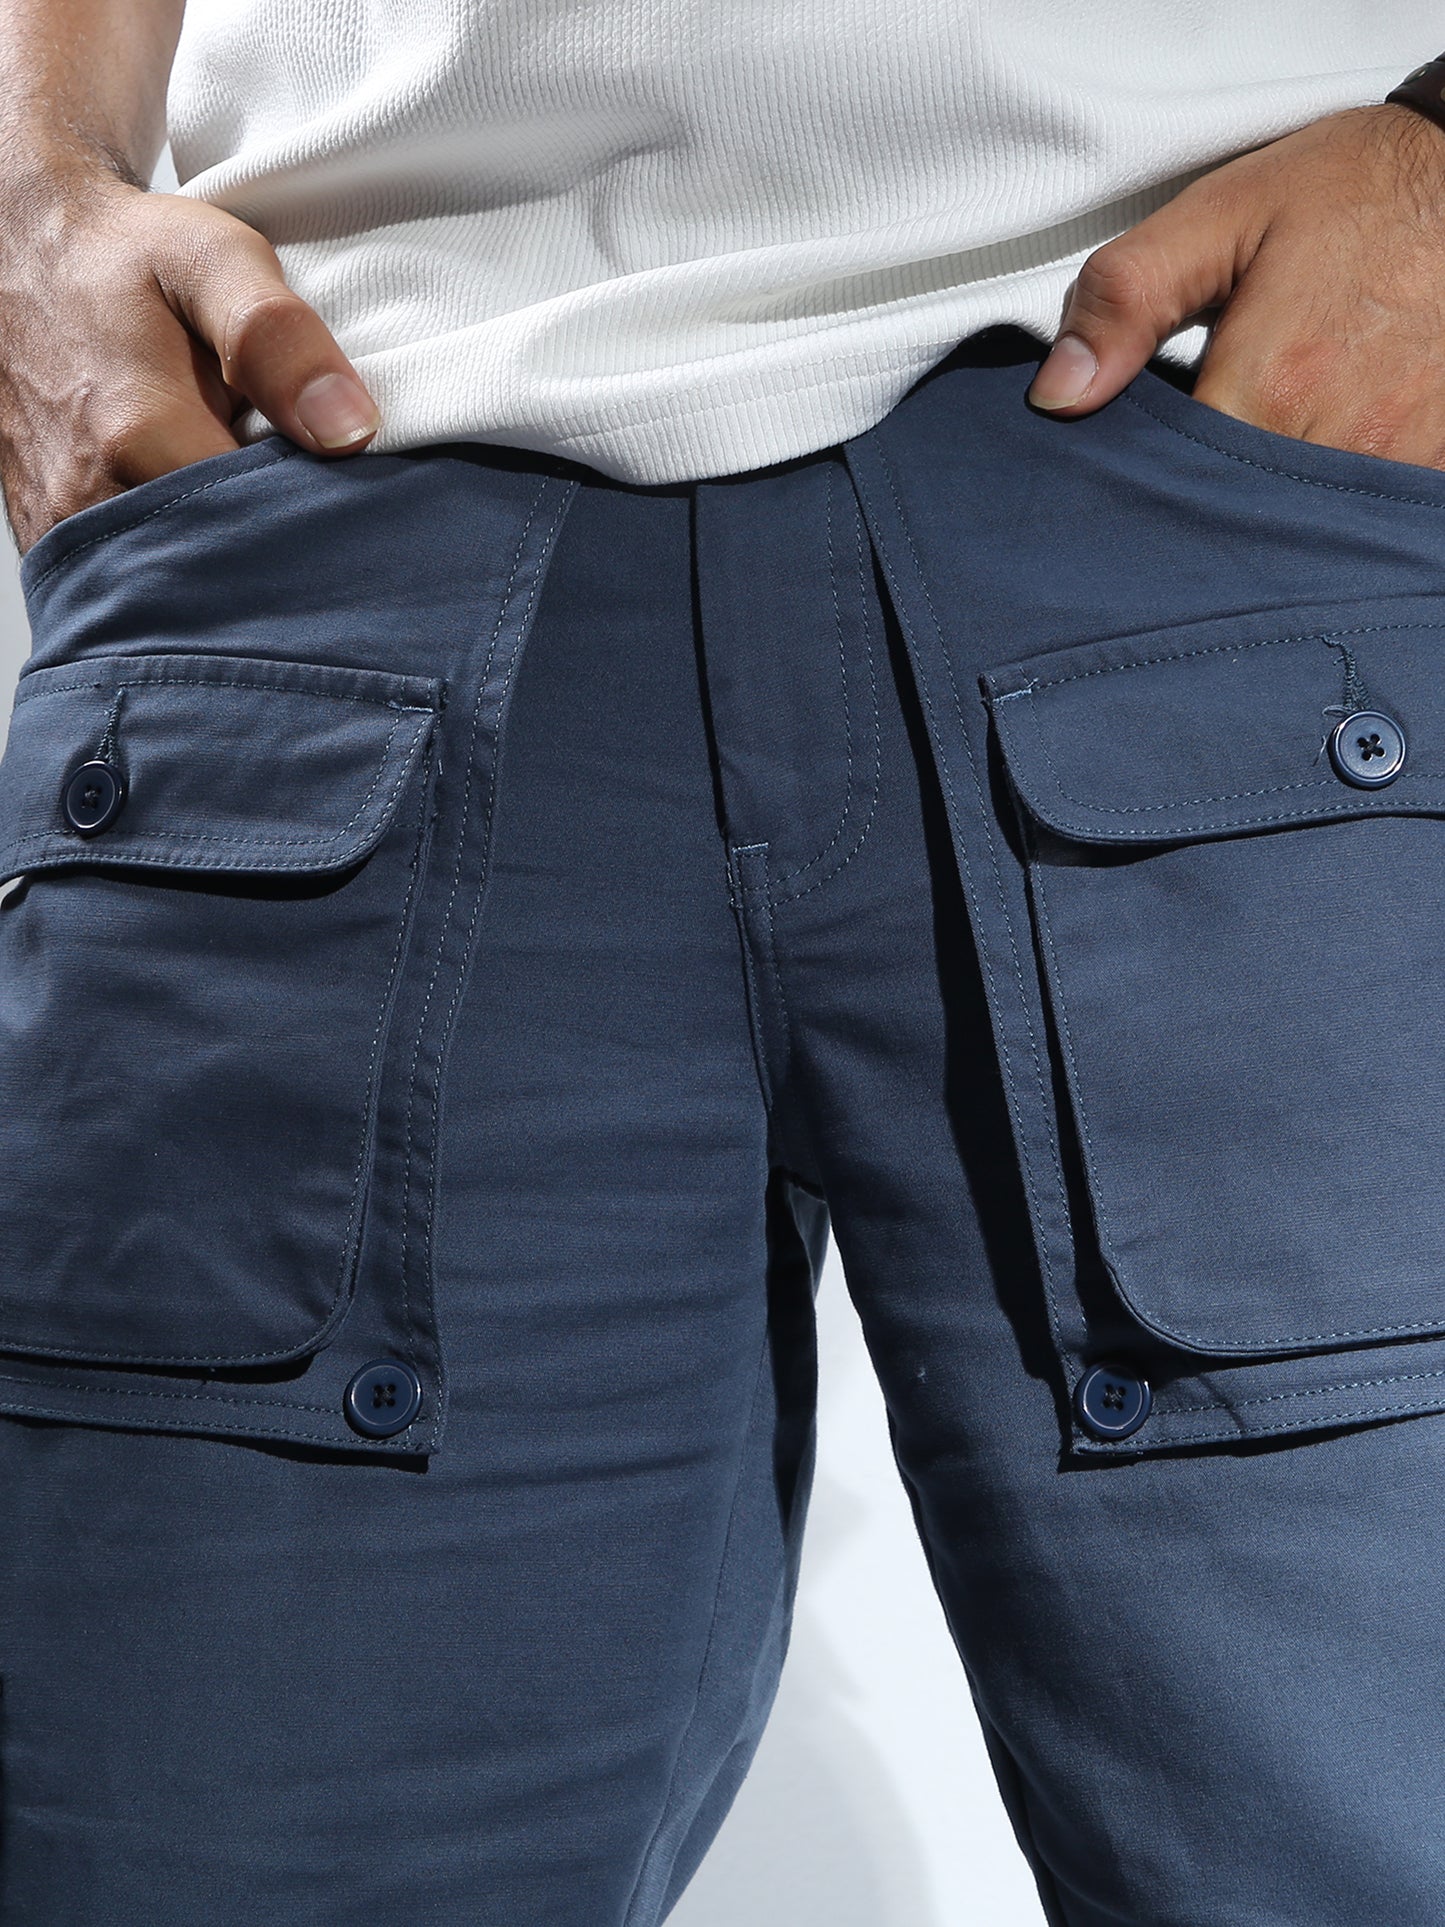 Aqua Baggy Cargo Pants For Men